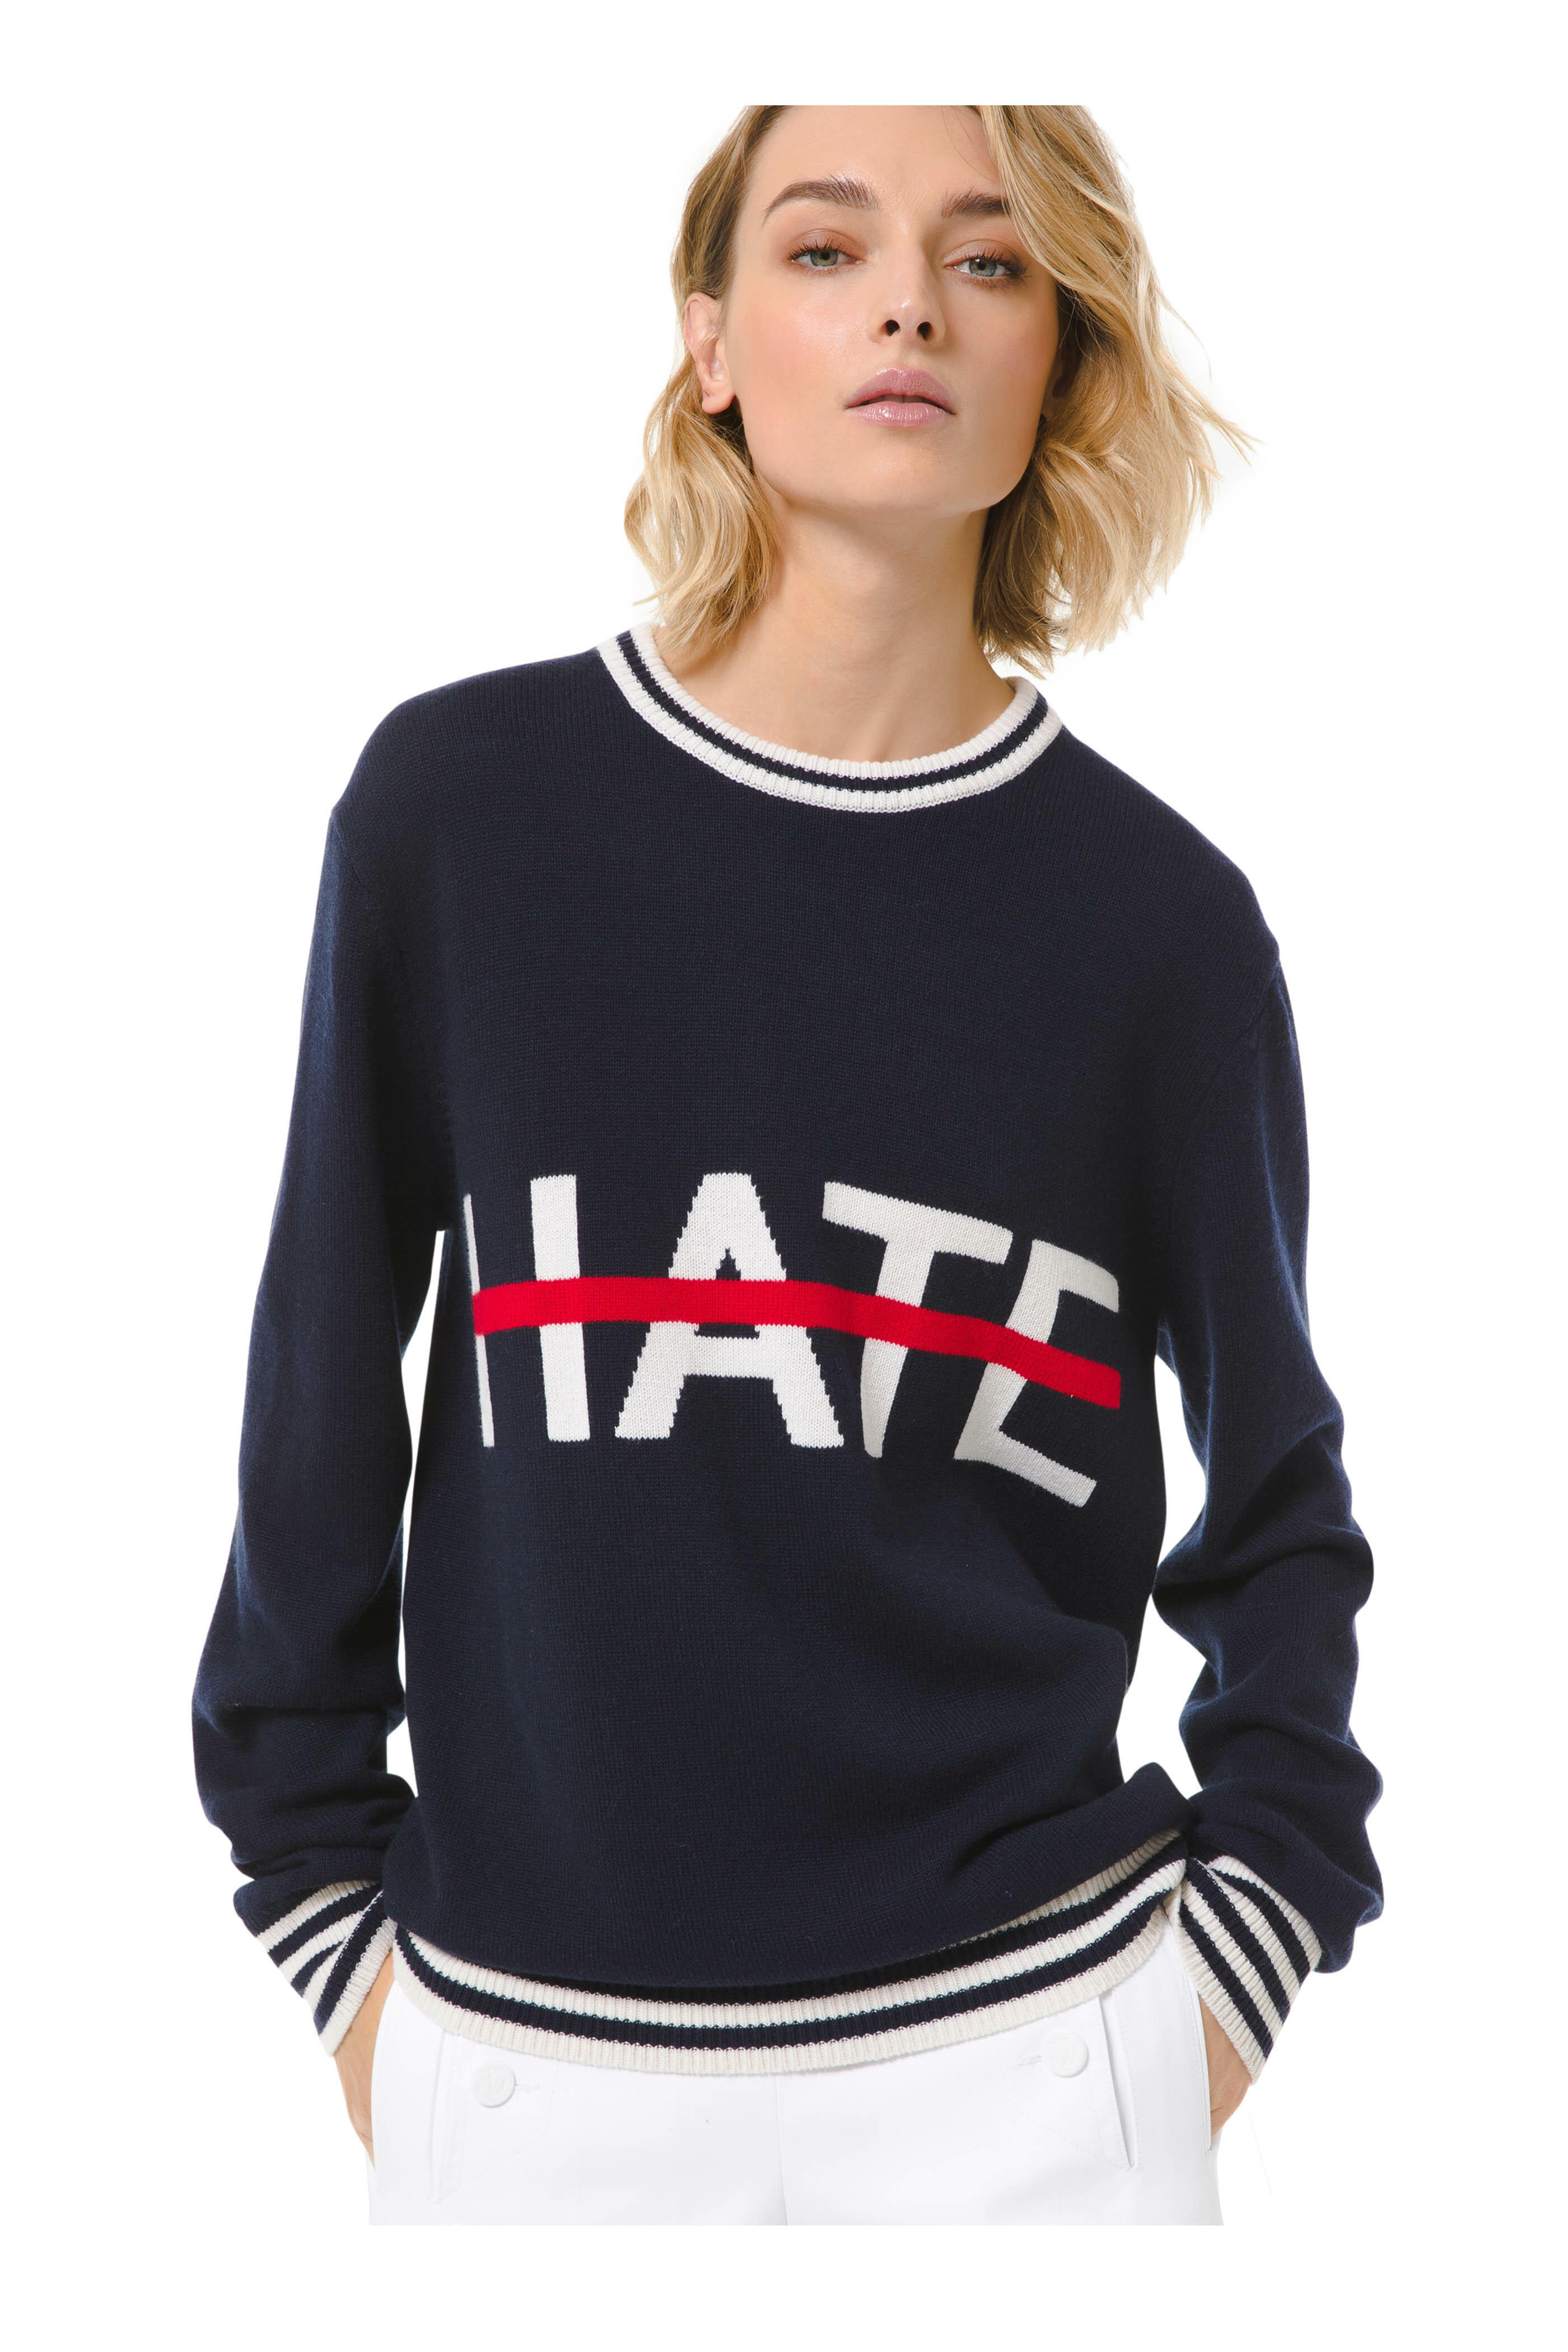 entrada Fuerza motriz Inspiración Michael Kors Collection - Navy & White No Hate Intarsia Sweater